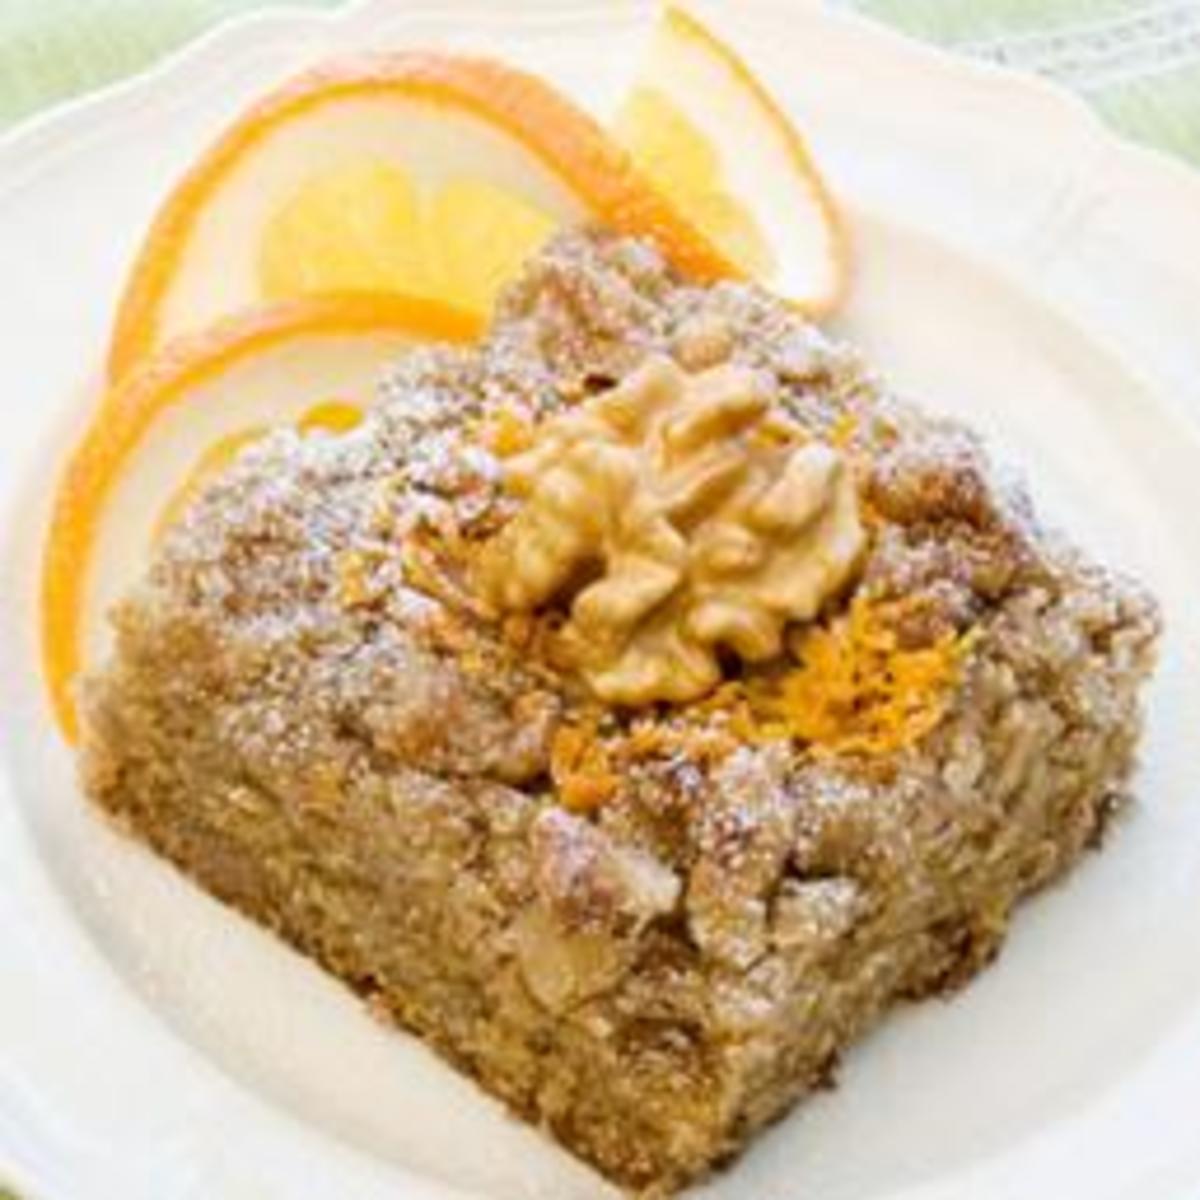 Buttermilk-Walnut Coffee Cake with Orange Essence